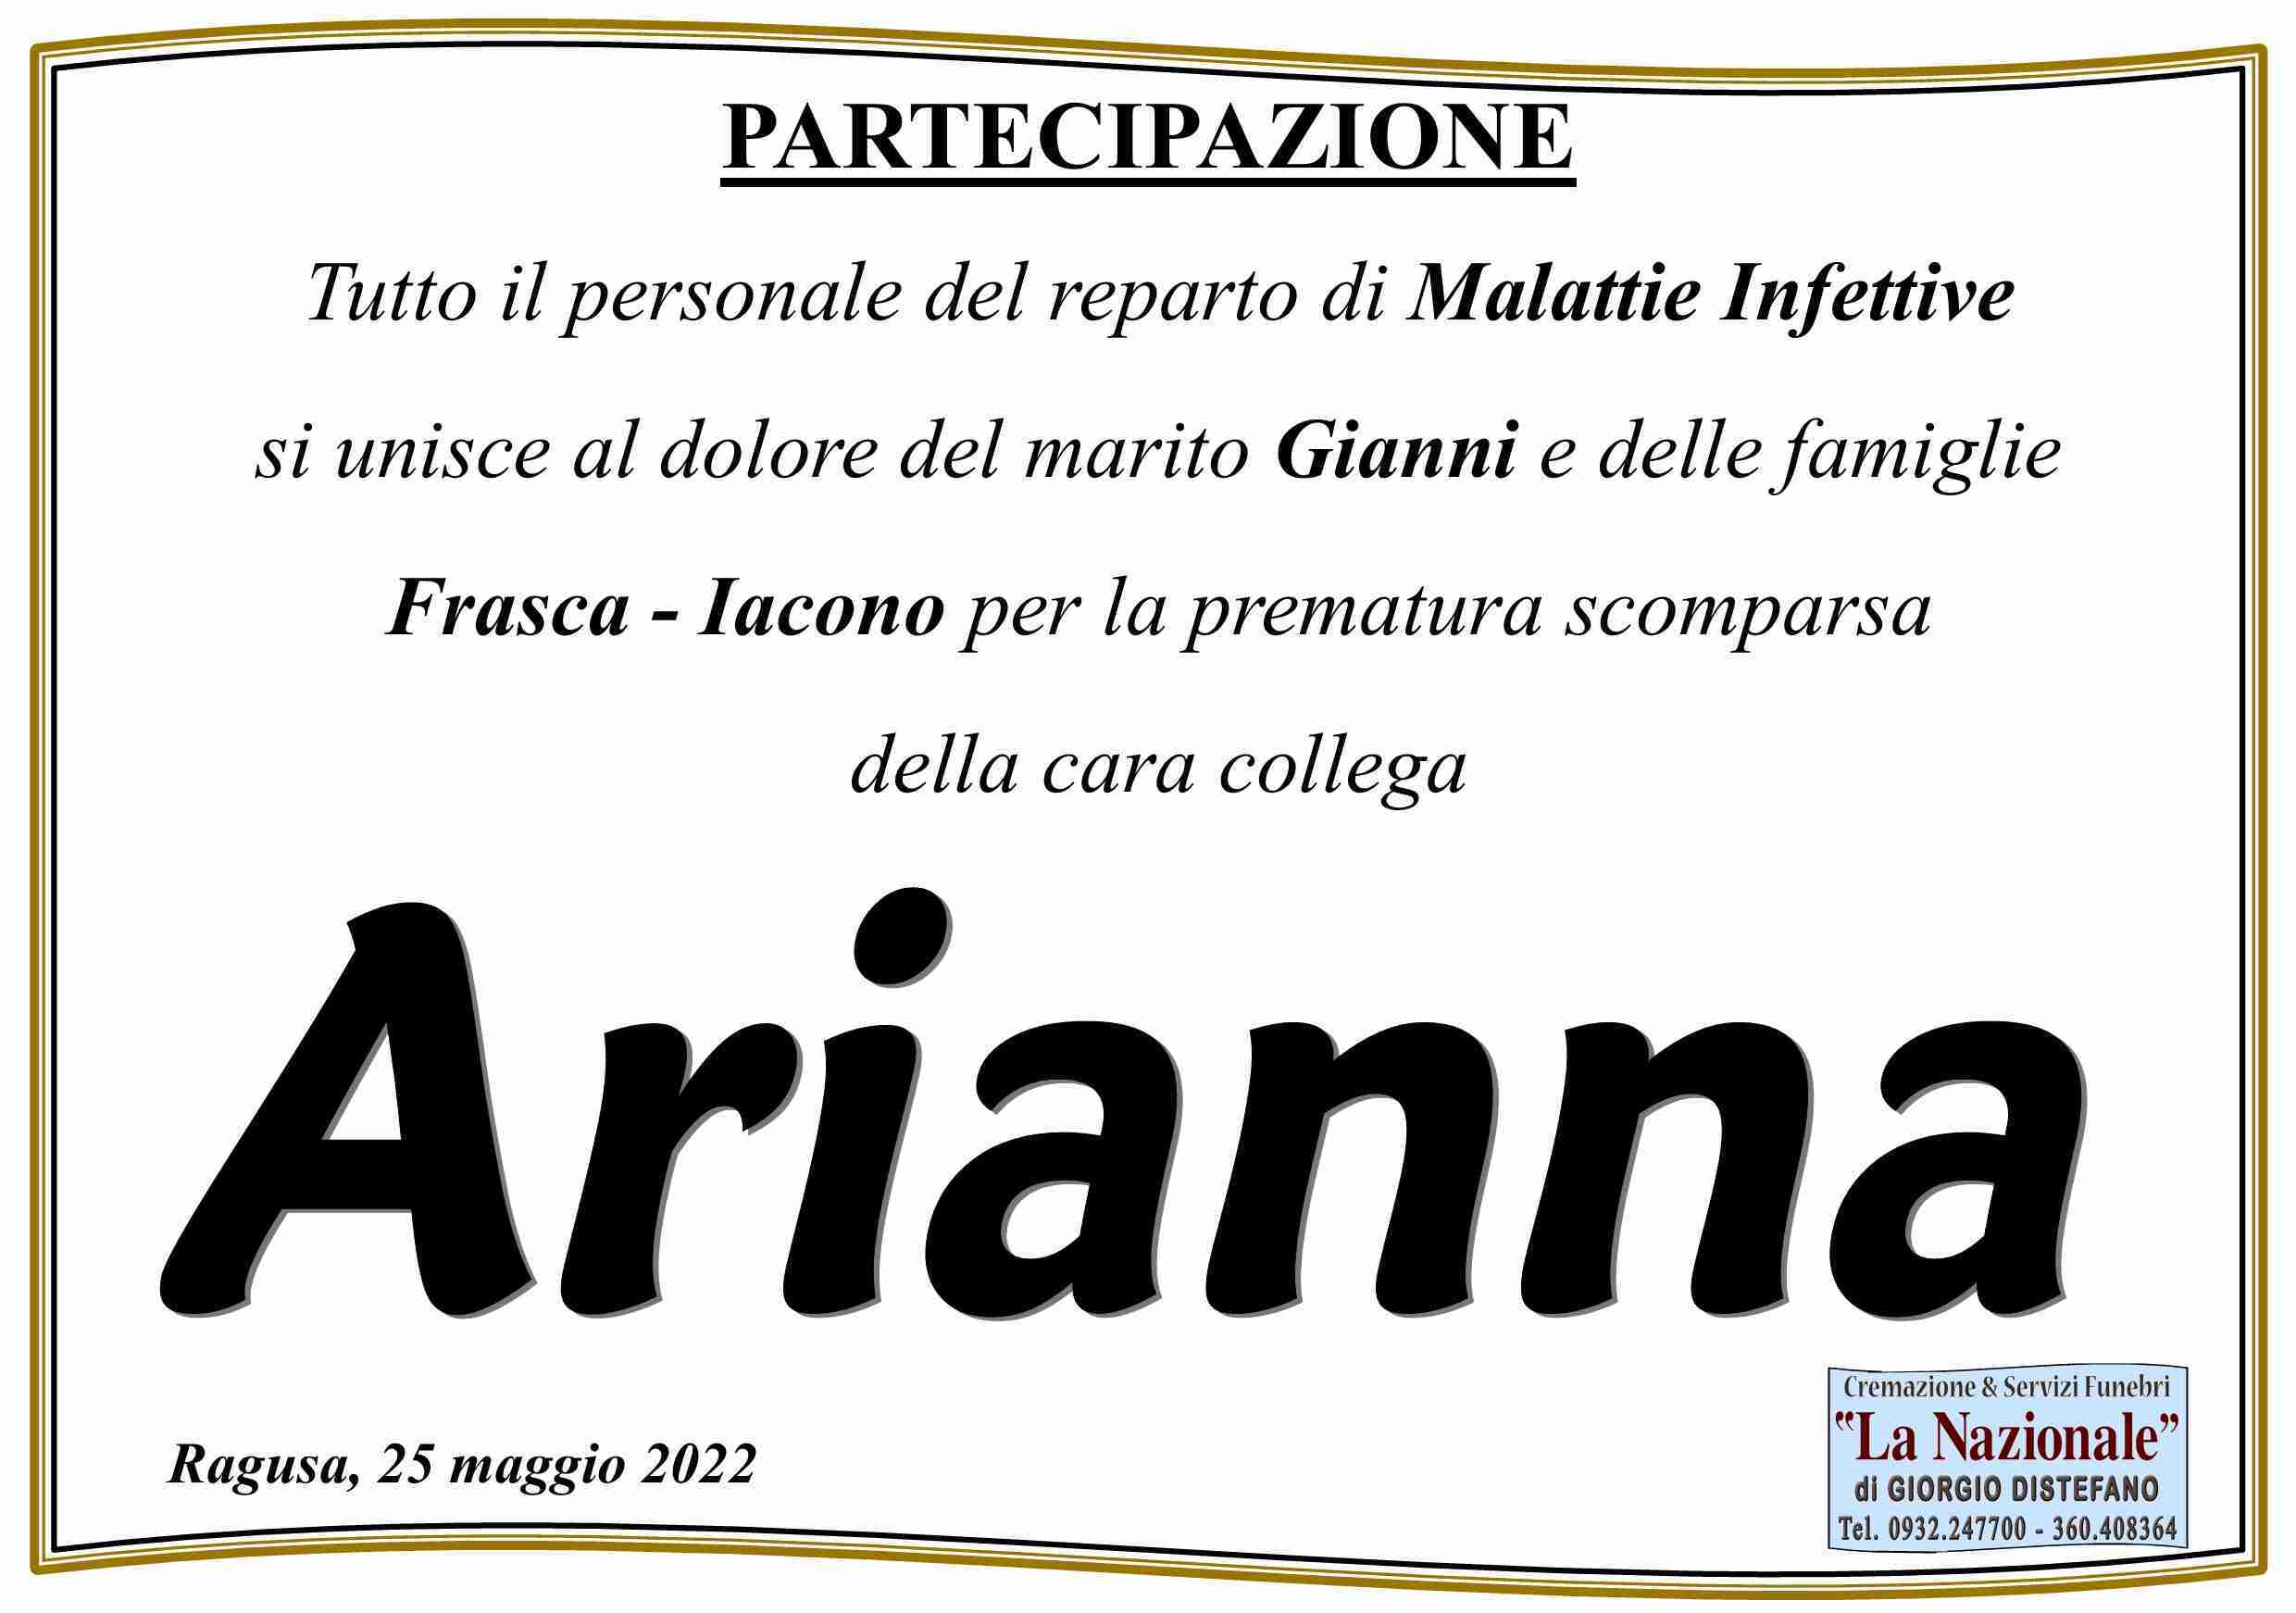 Arianna Frasca